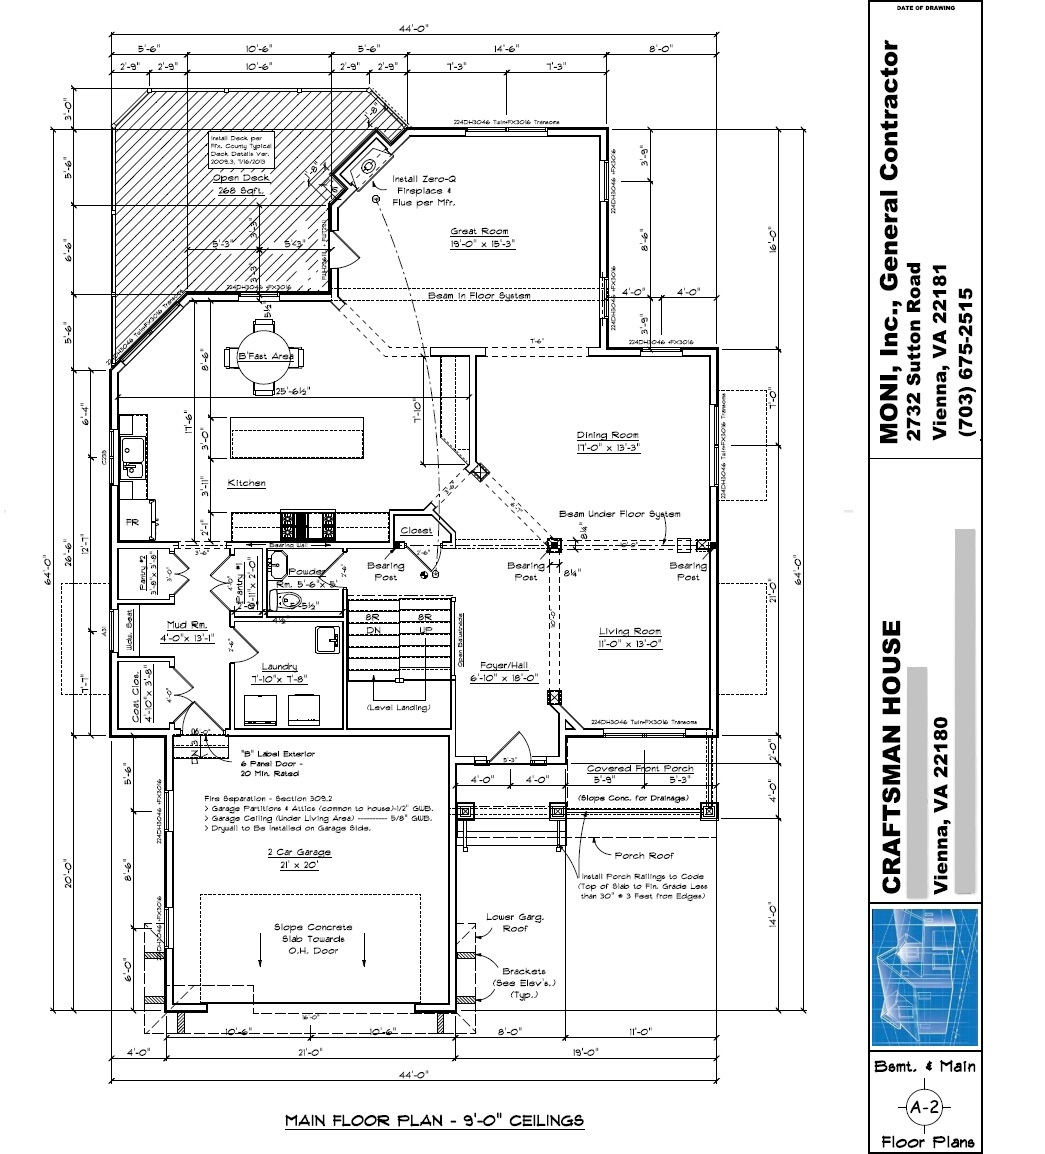 Sheet A-2 - Basement & Main Floor Plans - 01-10-2014 (2)